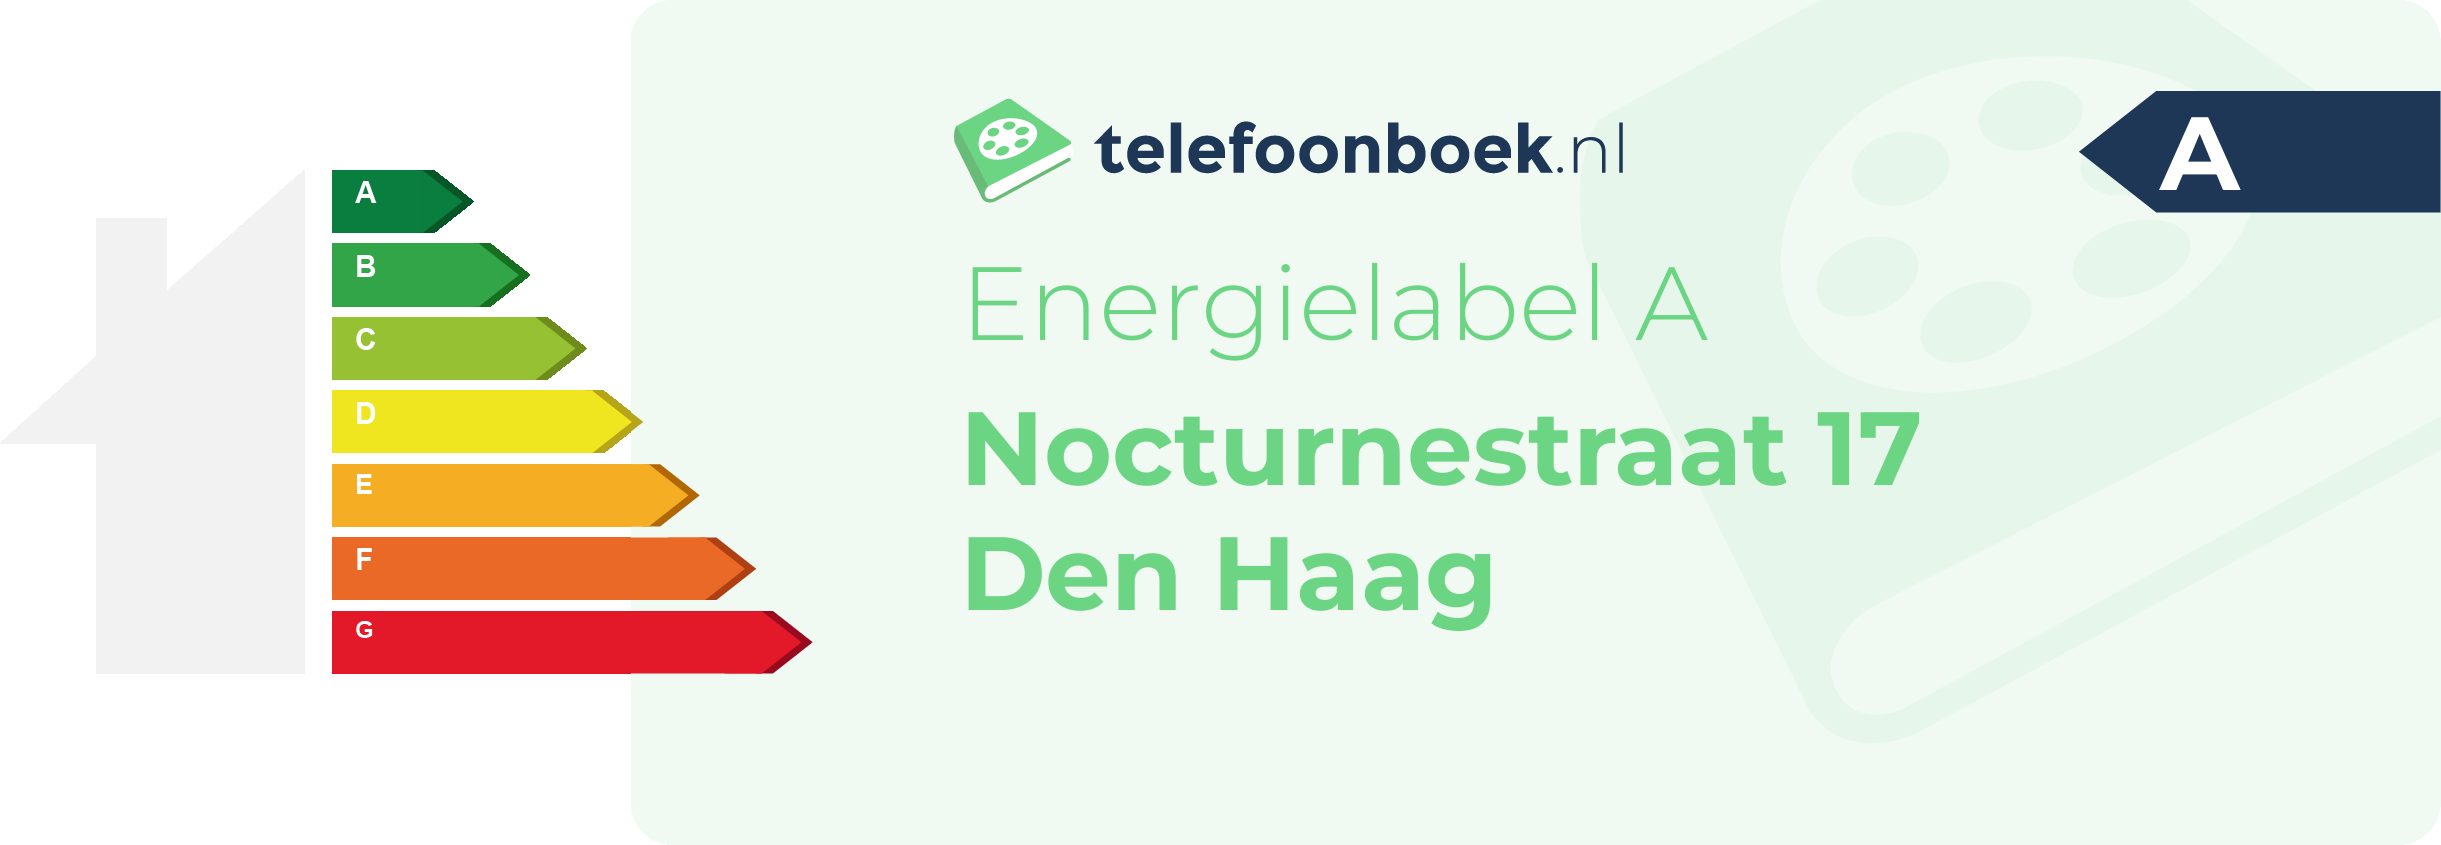 Energielabel Nocturnestraat 17 Den Haag